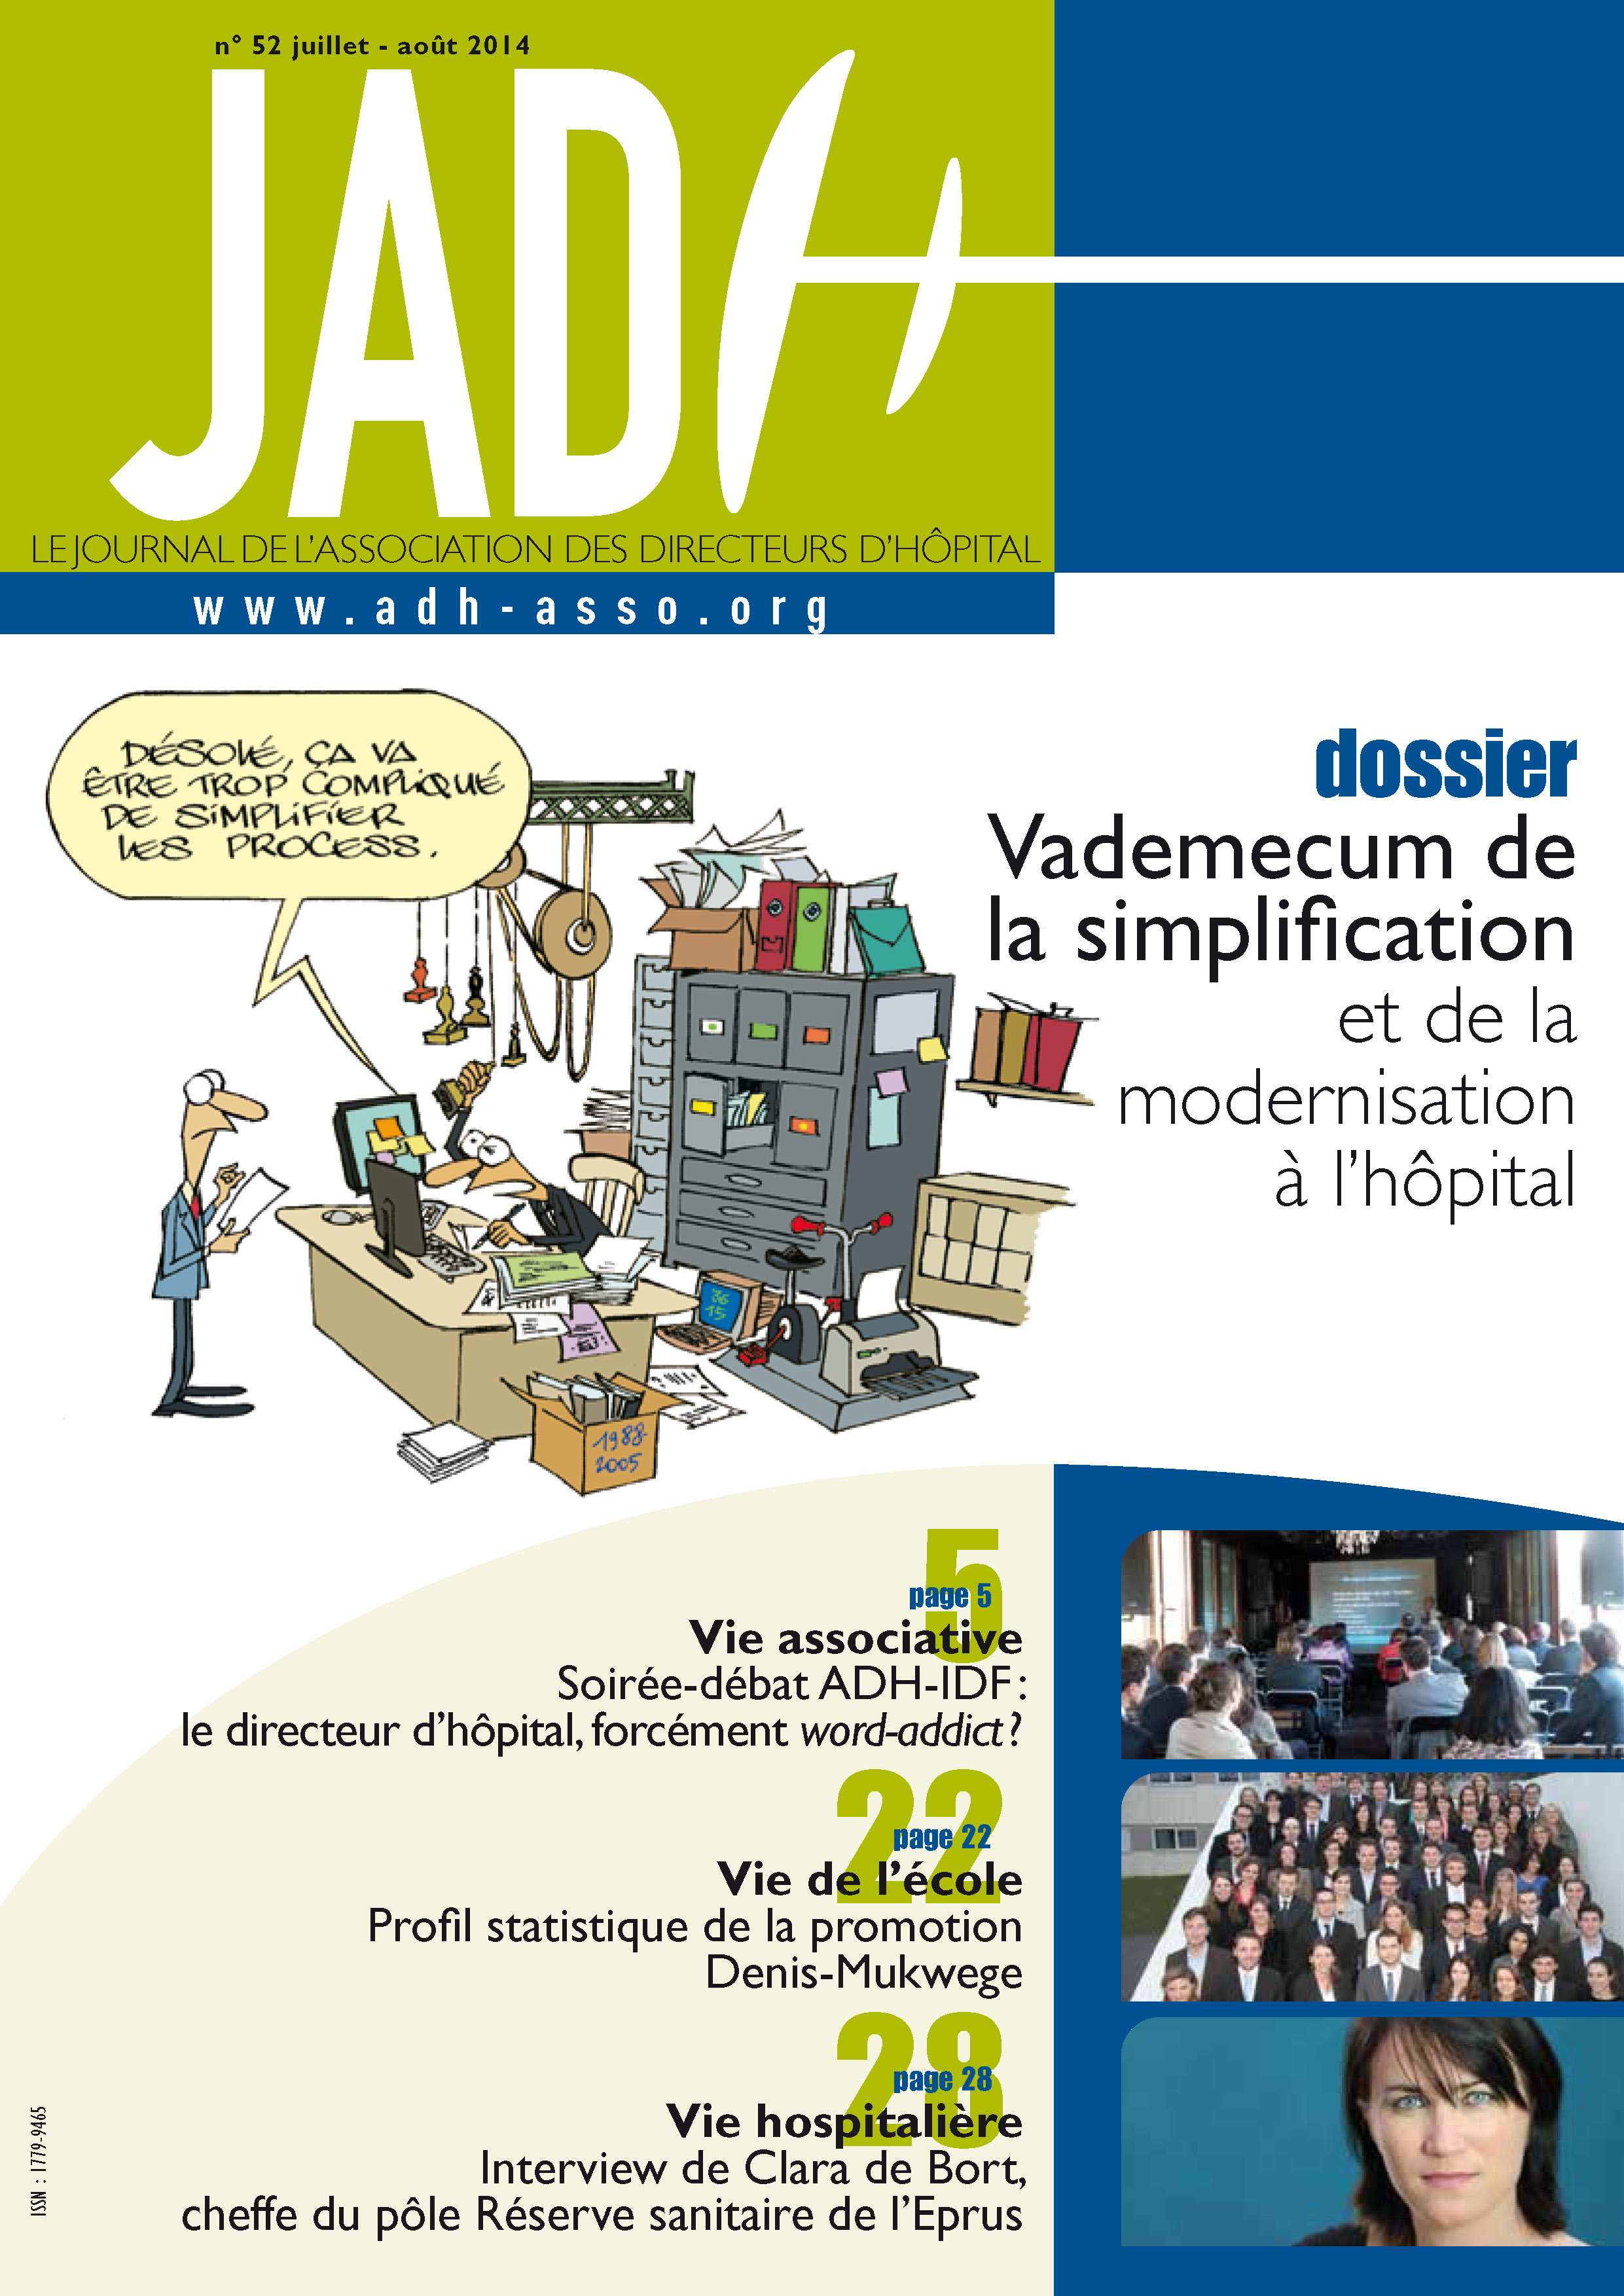 JADH 52 – juillet/août 2014